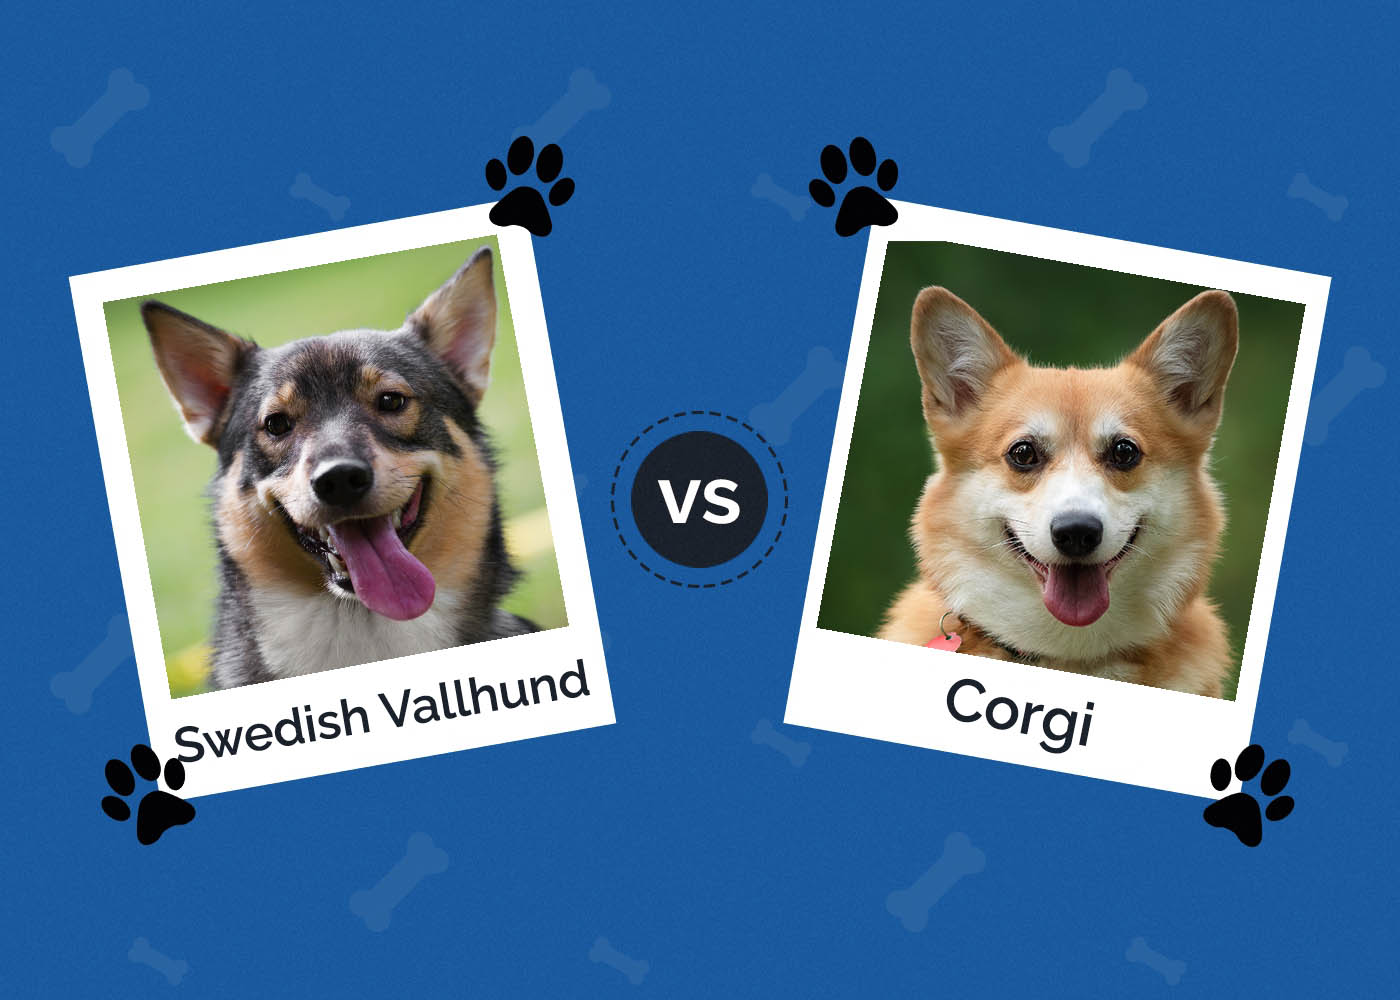 Swedish Vallhund vs Corgi